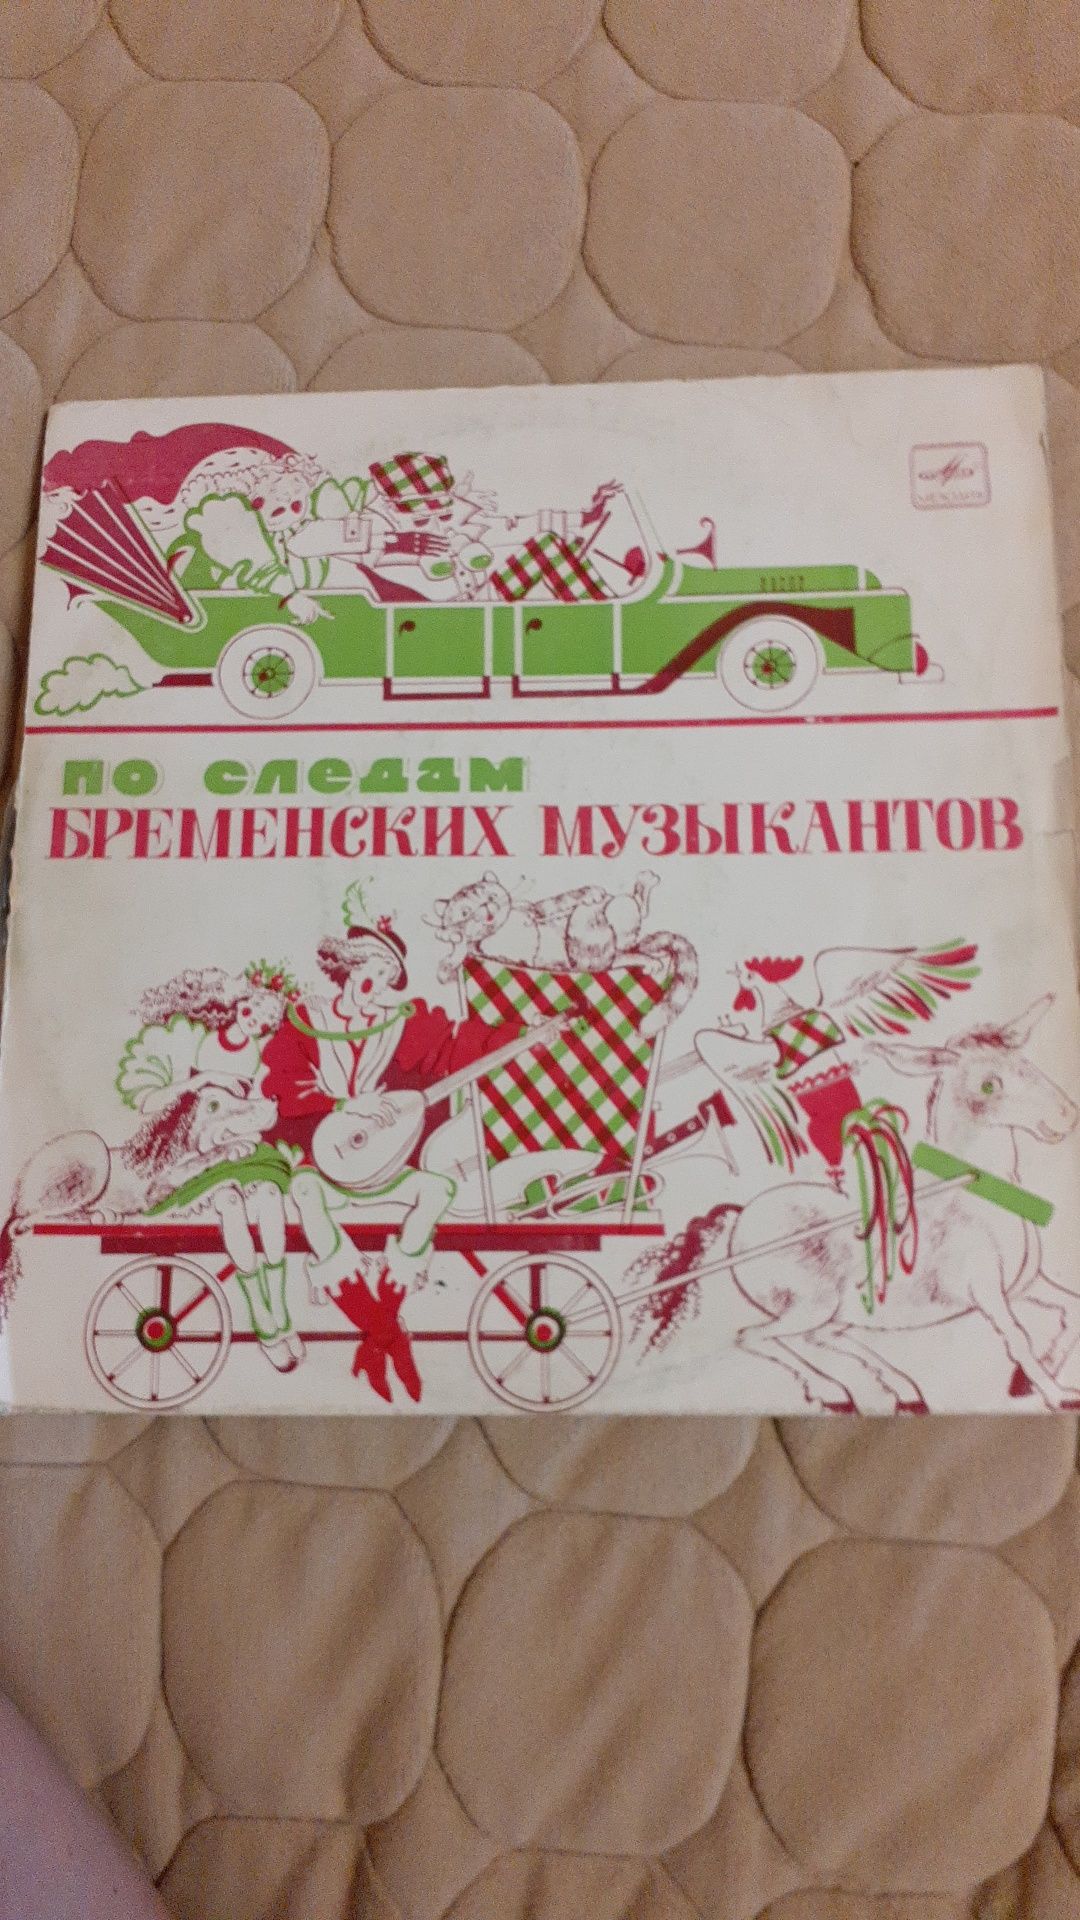 Коллекция сказок детских  на грампластинках времён СССР